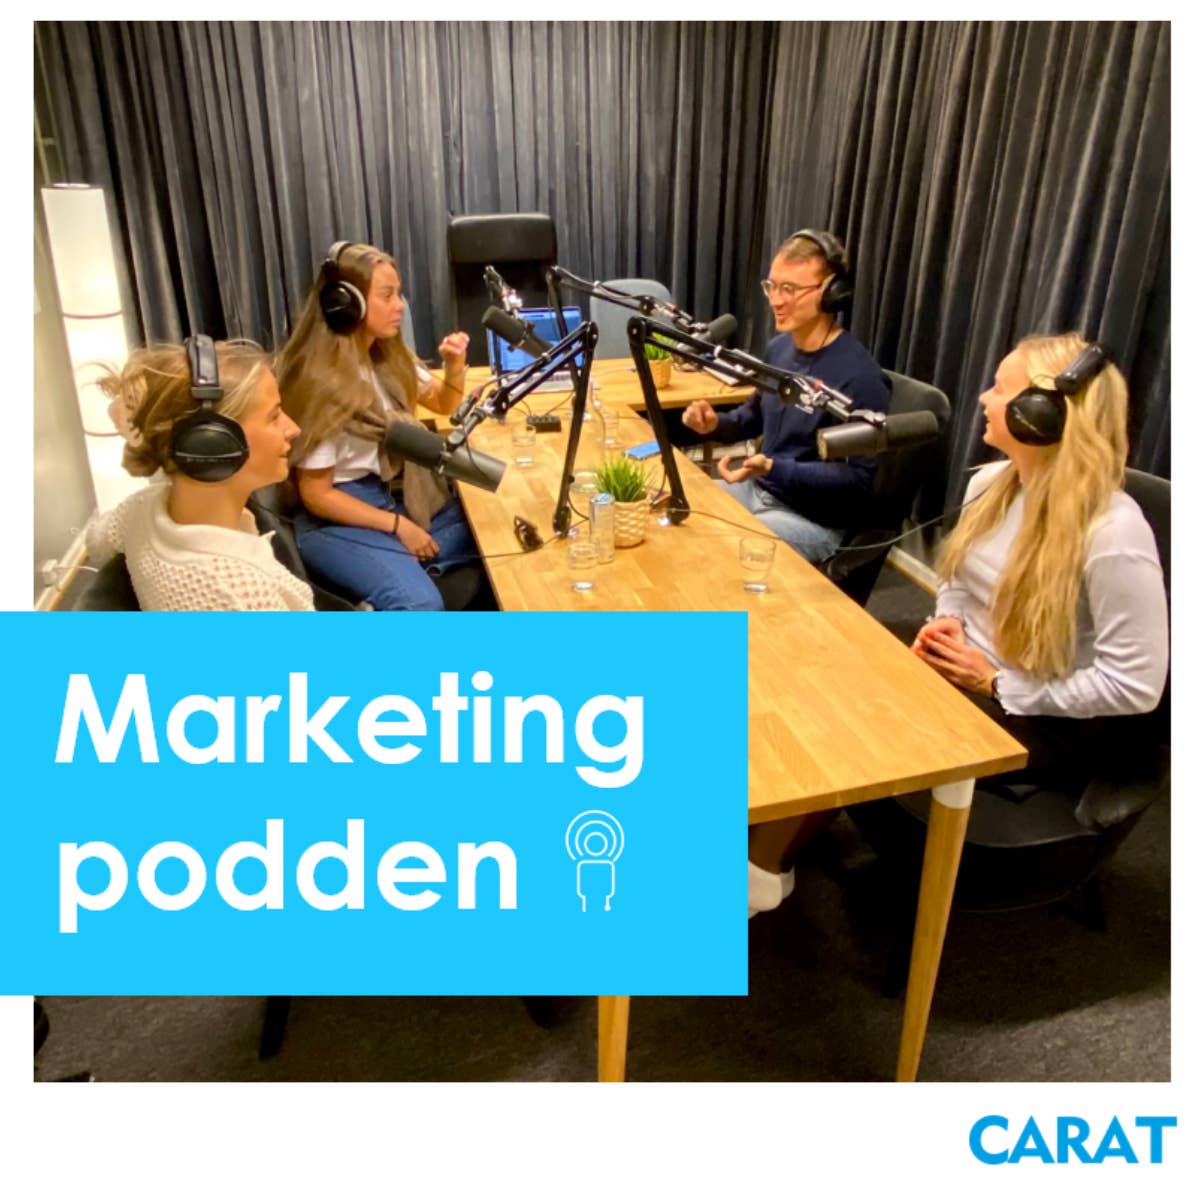 Marketingpodden episode 52 - vi møter vinnerne av Young Lions Media i Norge!